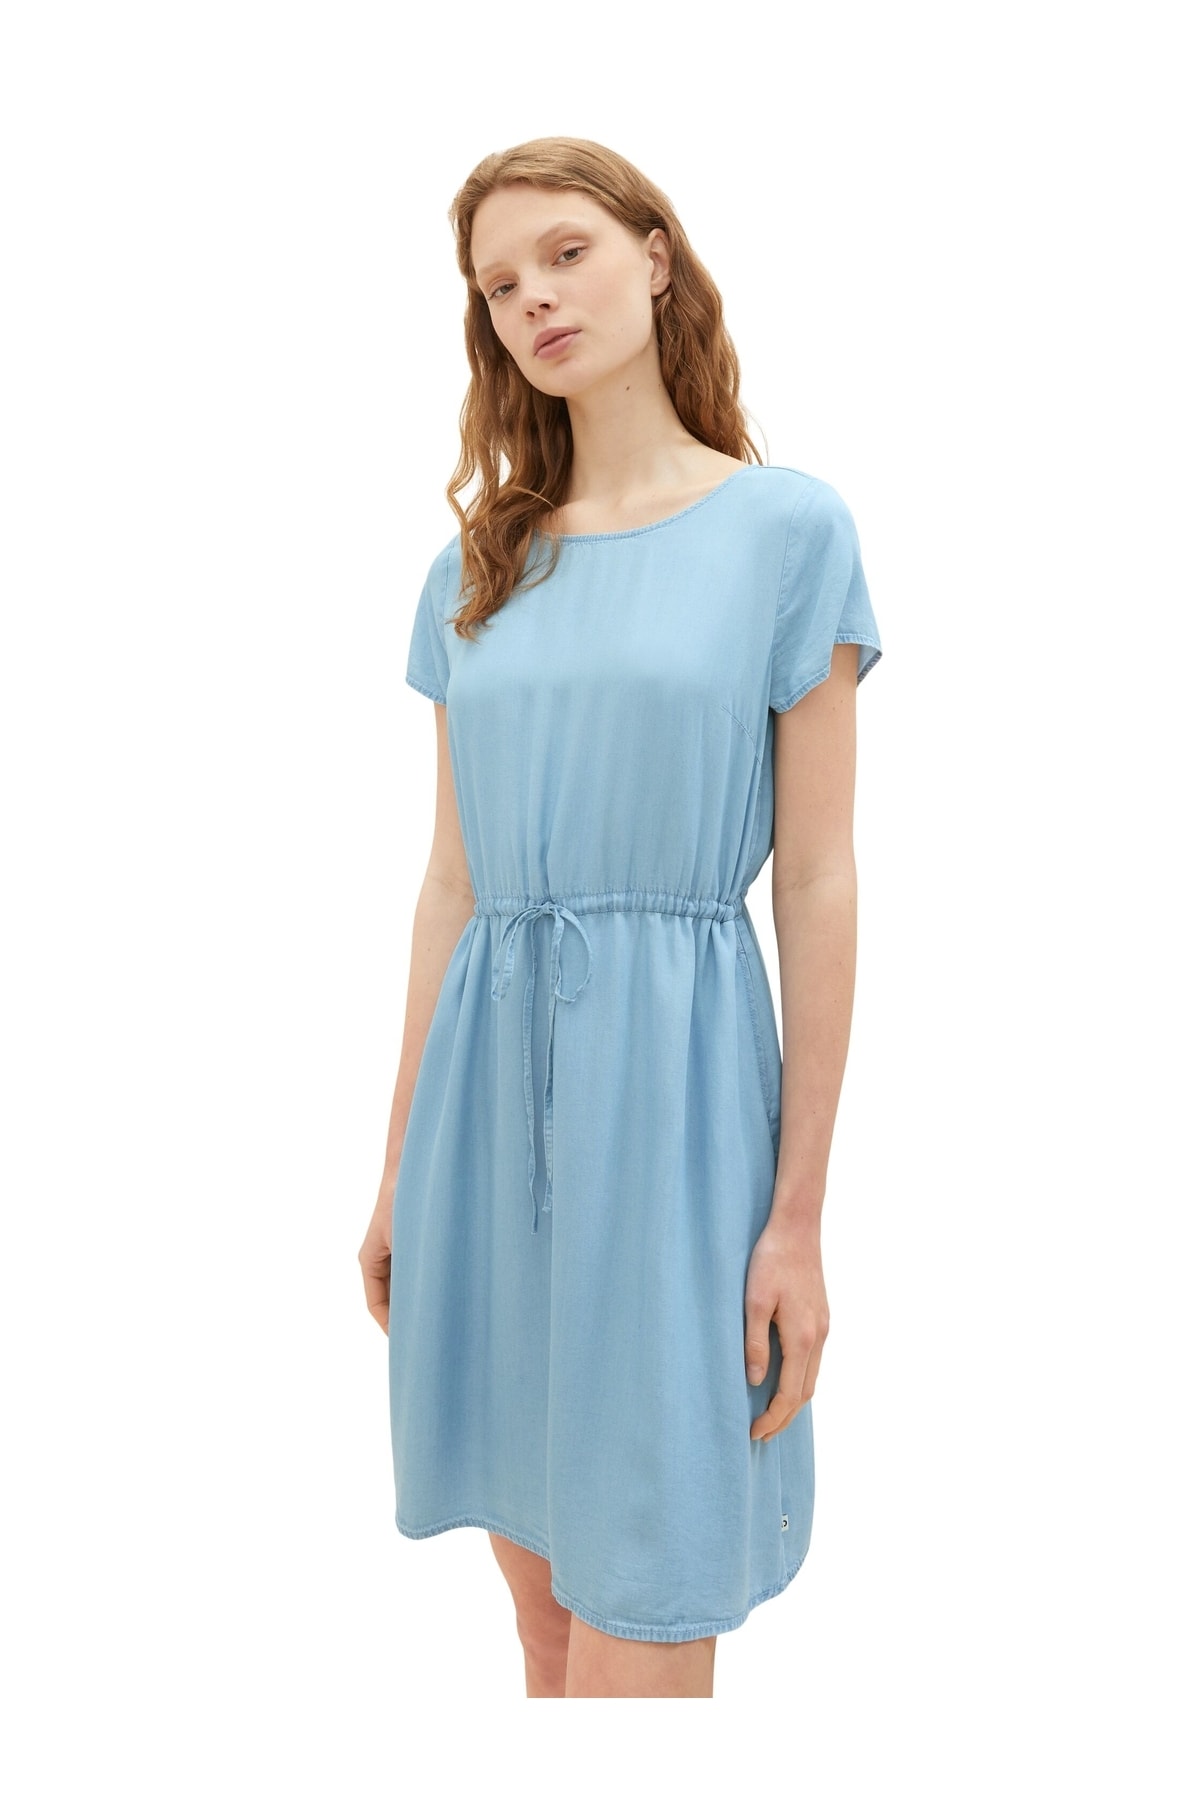 Платье - Бирюзовое - Базовое Tom Tailor Denim, бирюзовый худи tom tailor размер s голубой бирюзовый